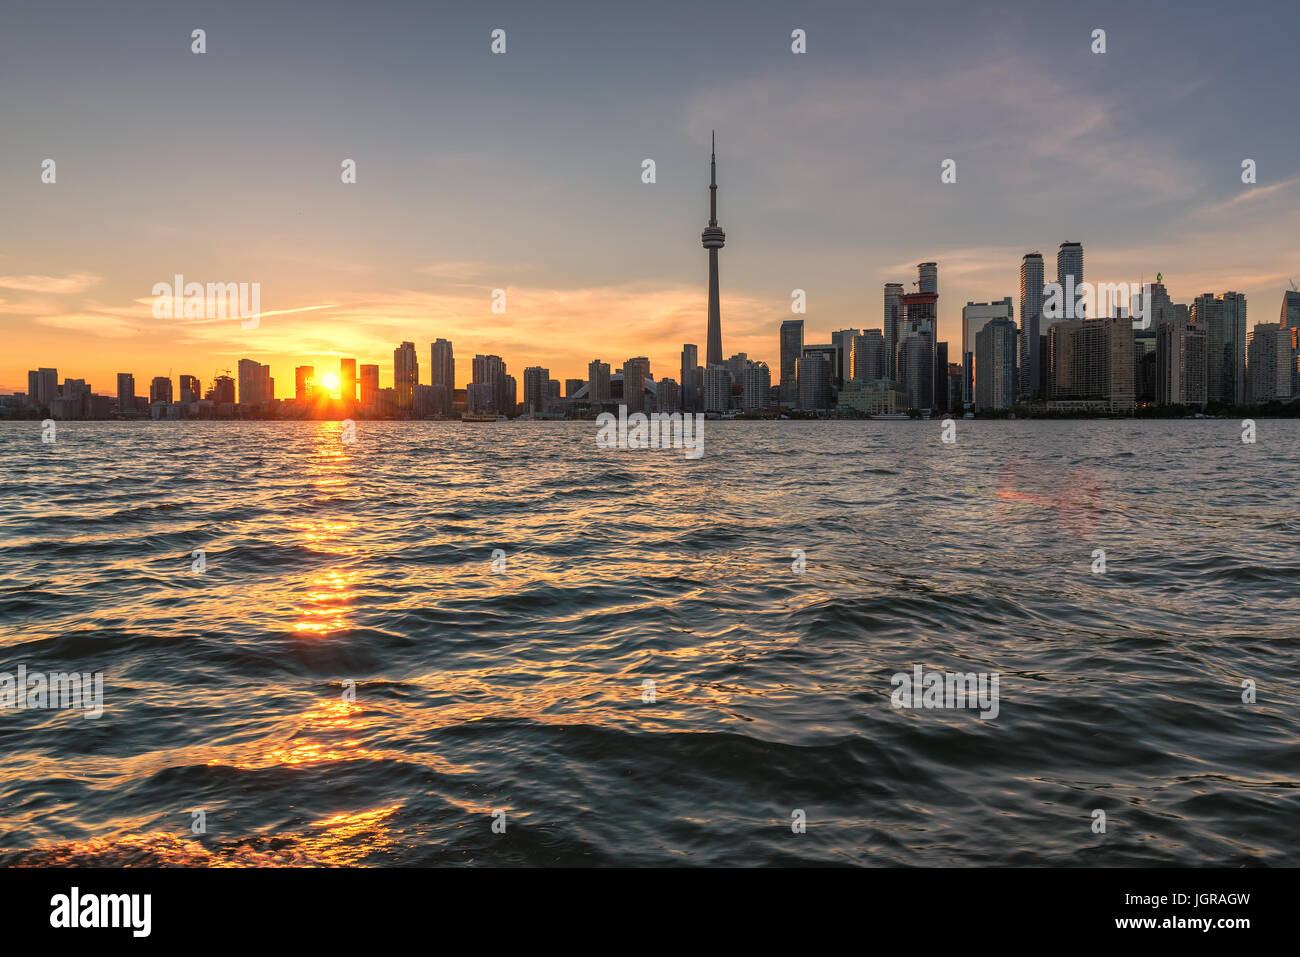 Ville de Toronto au coucher du soleil, avec la Tour CN, Canada Banque D'Images